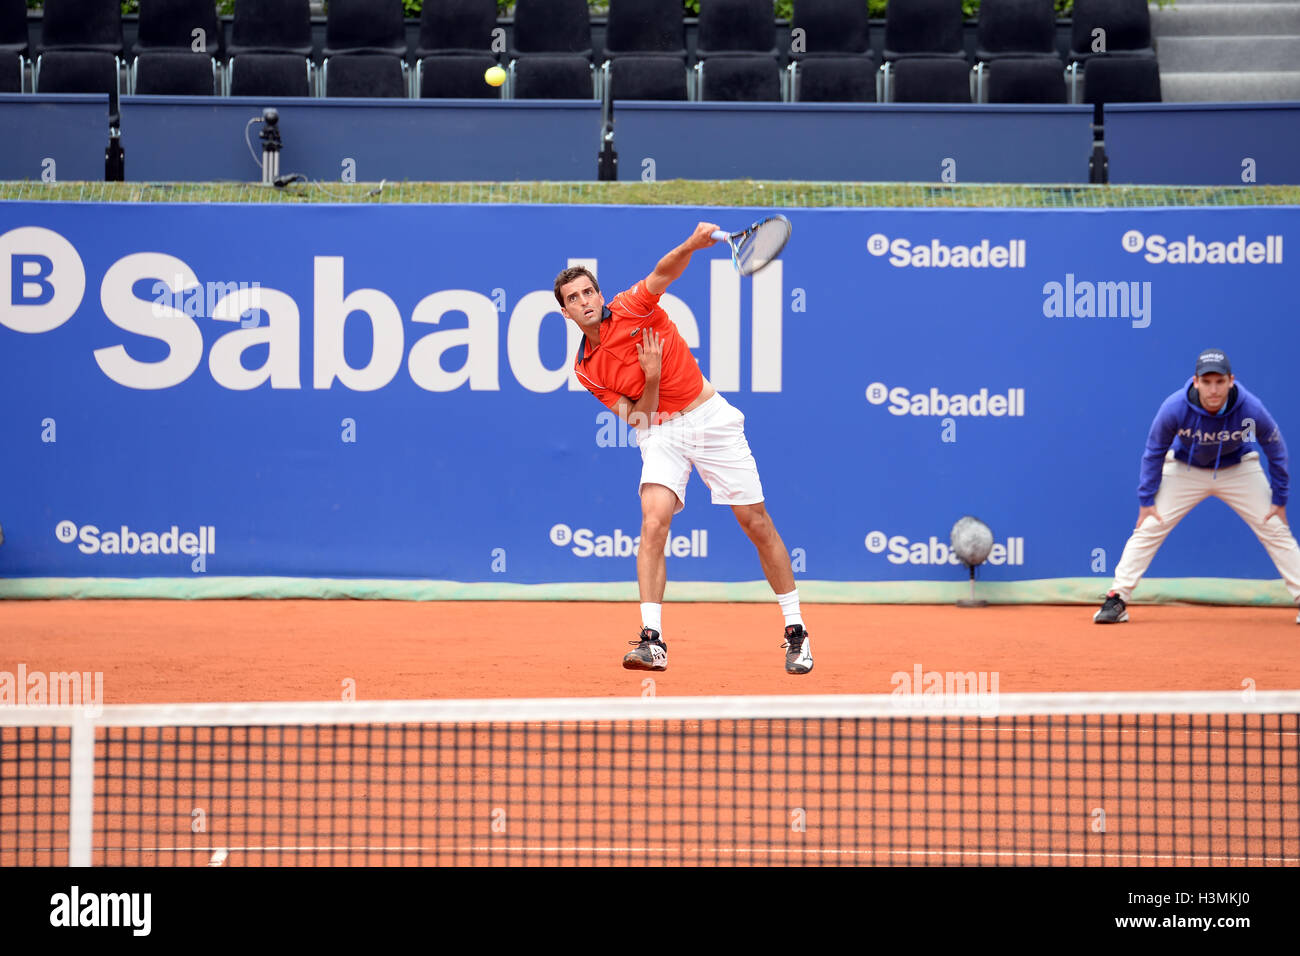 Barcellona - Apr 20: Albert Ramos Vinolas (spagnolo giocatore di tennis) svolge in ATP Open di Barcellona. Foto Stock